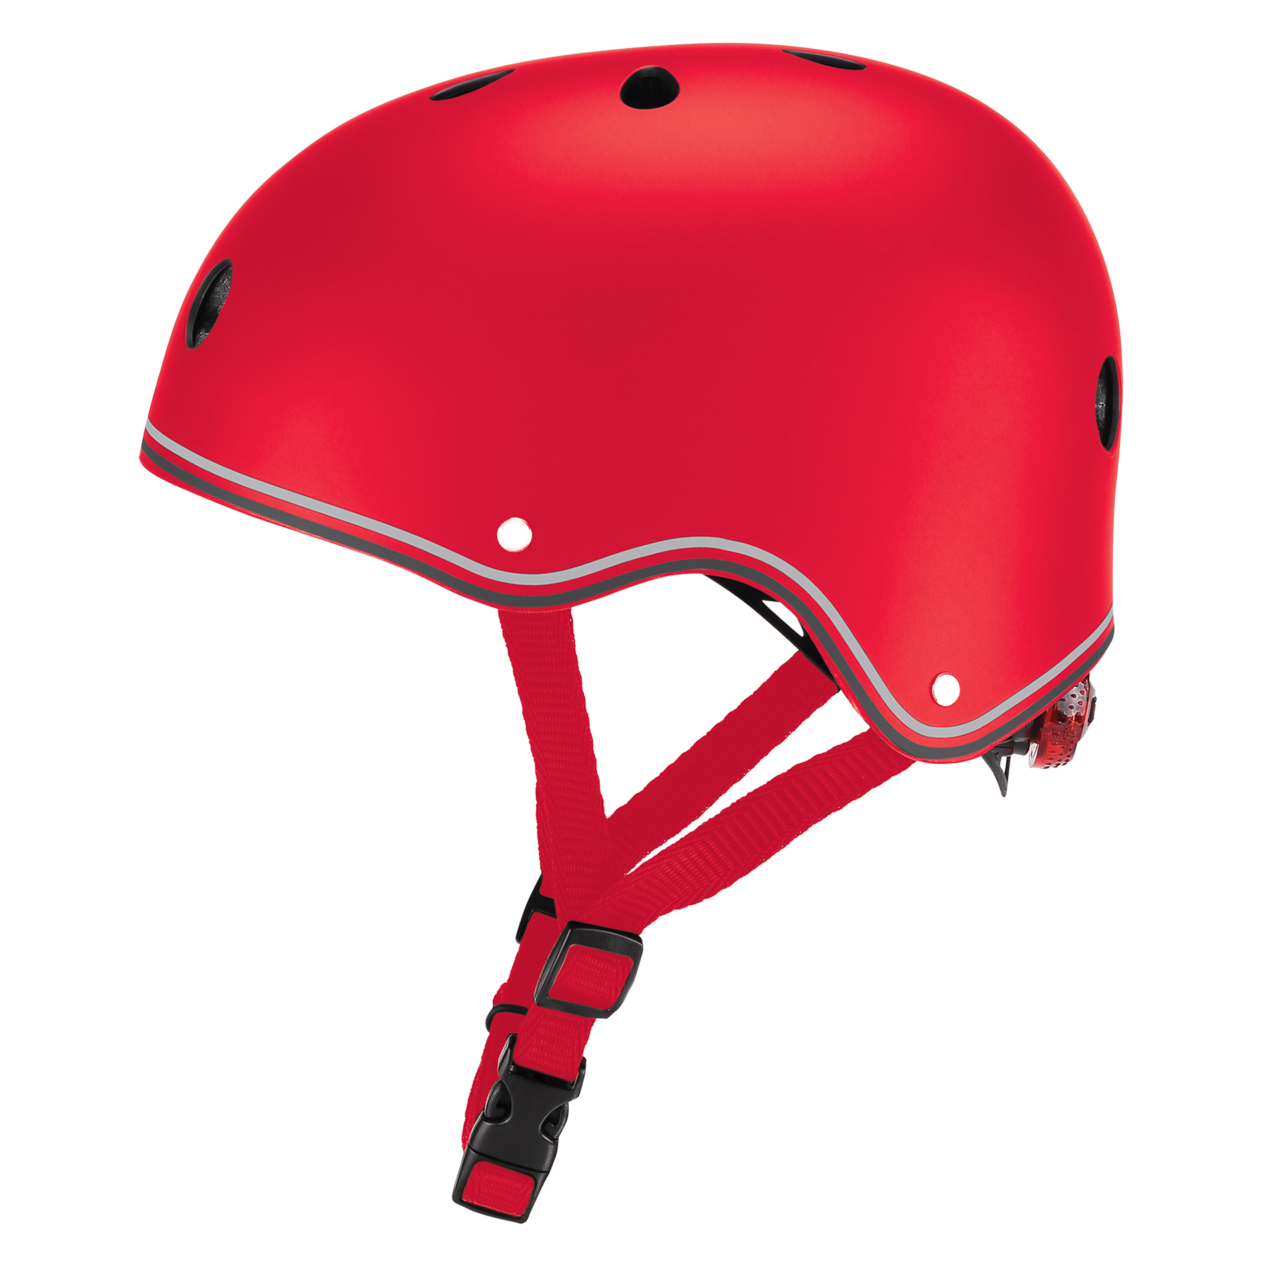 505 102 Kid Scooter Helmets With Adjustable Knob